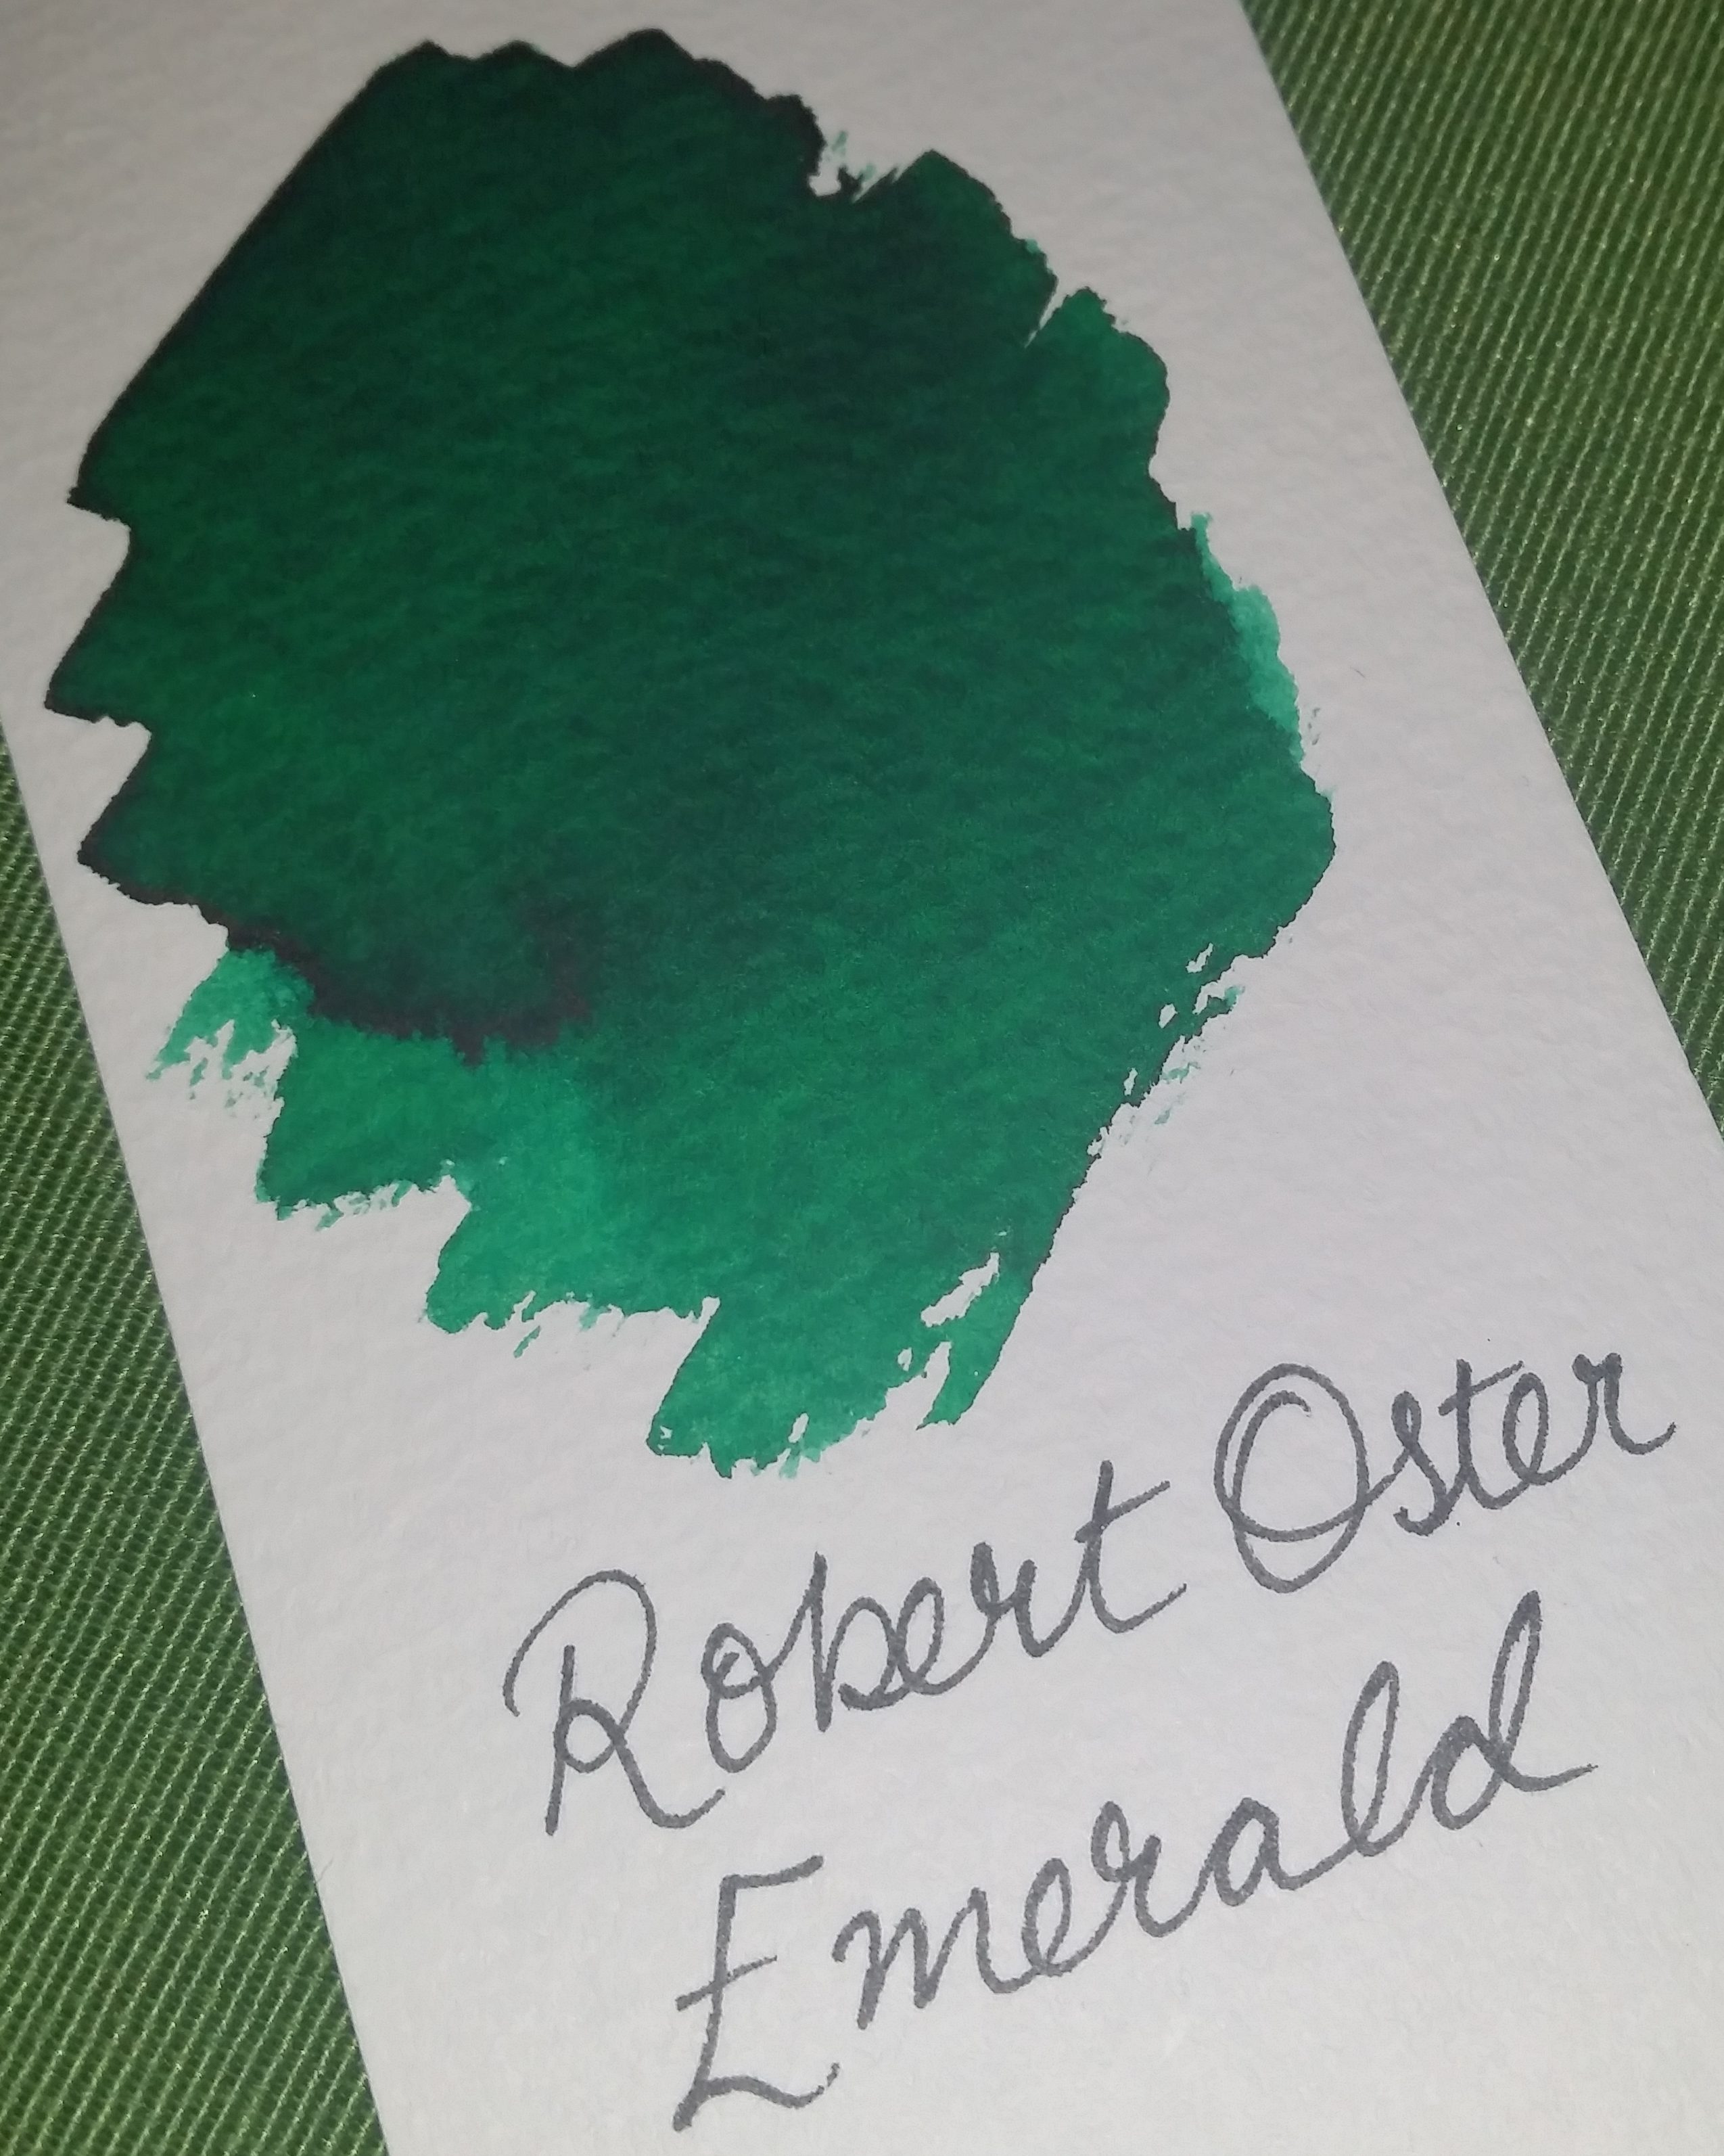 Robert Oster Emerald ink